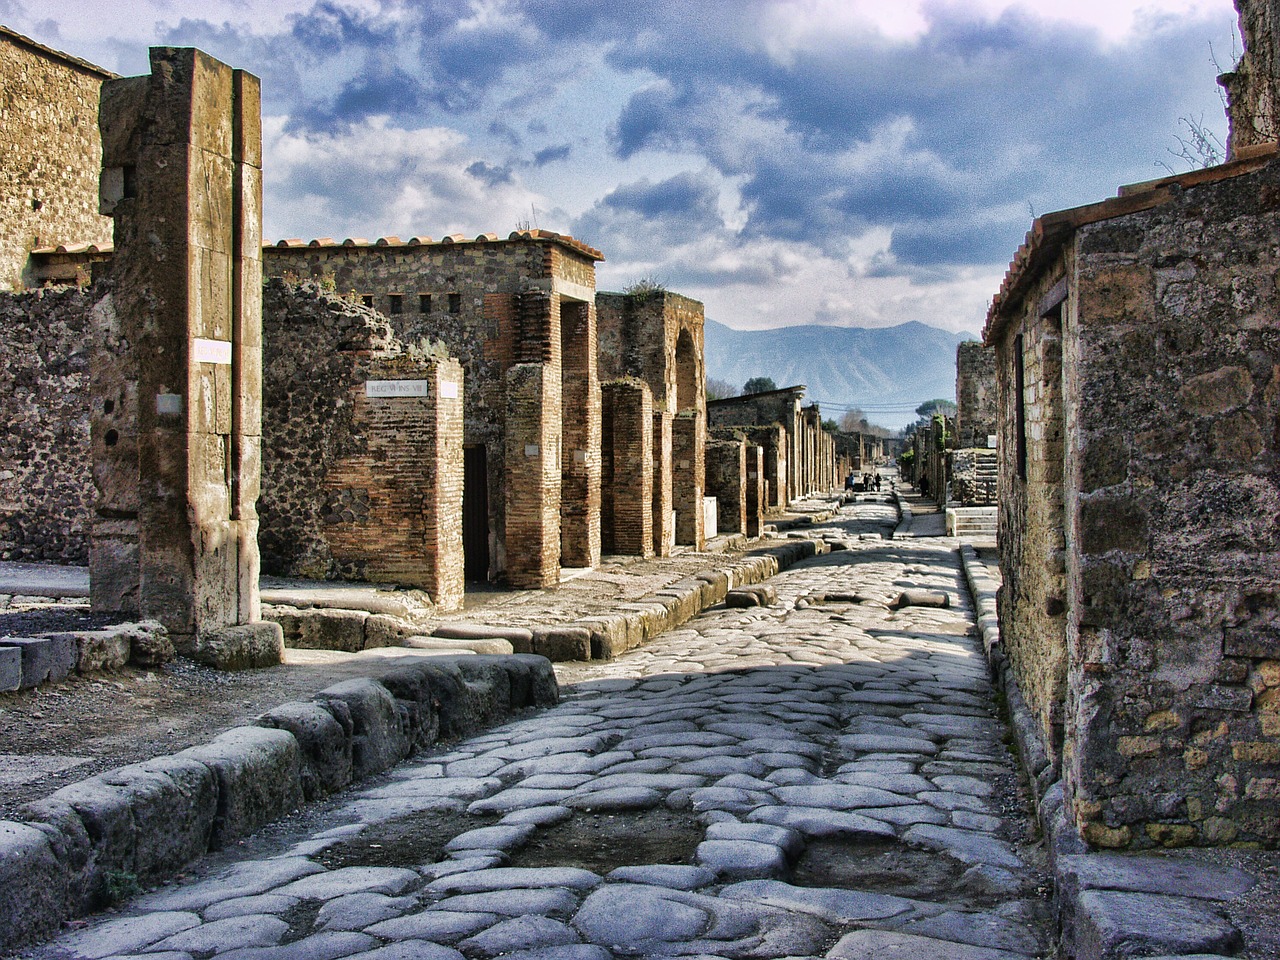 Streets of Pompeii